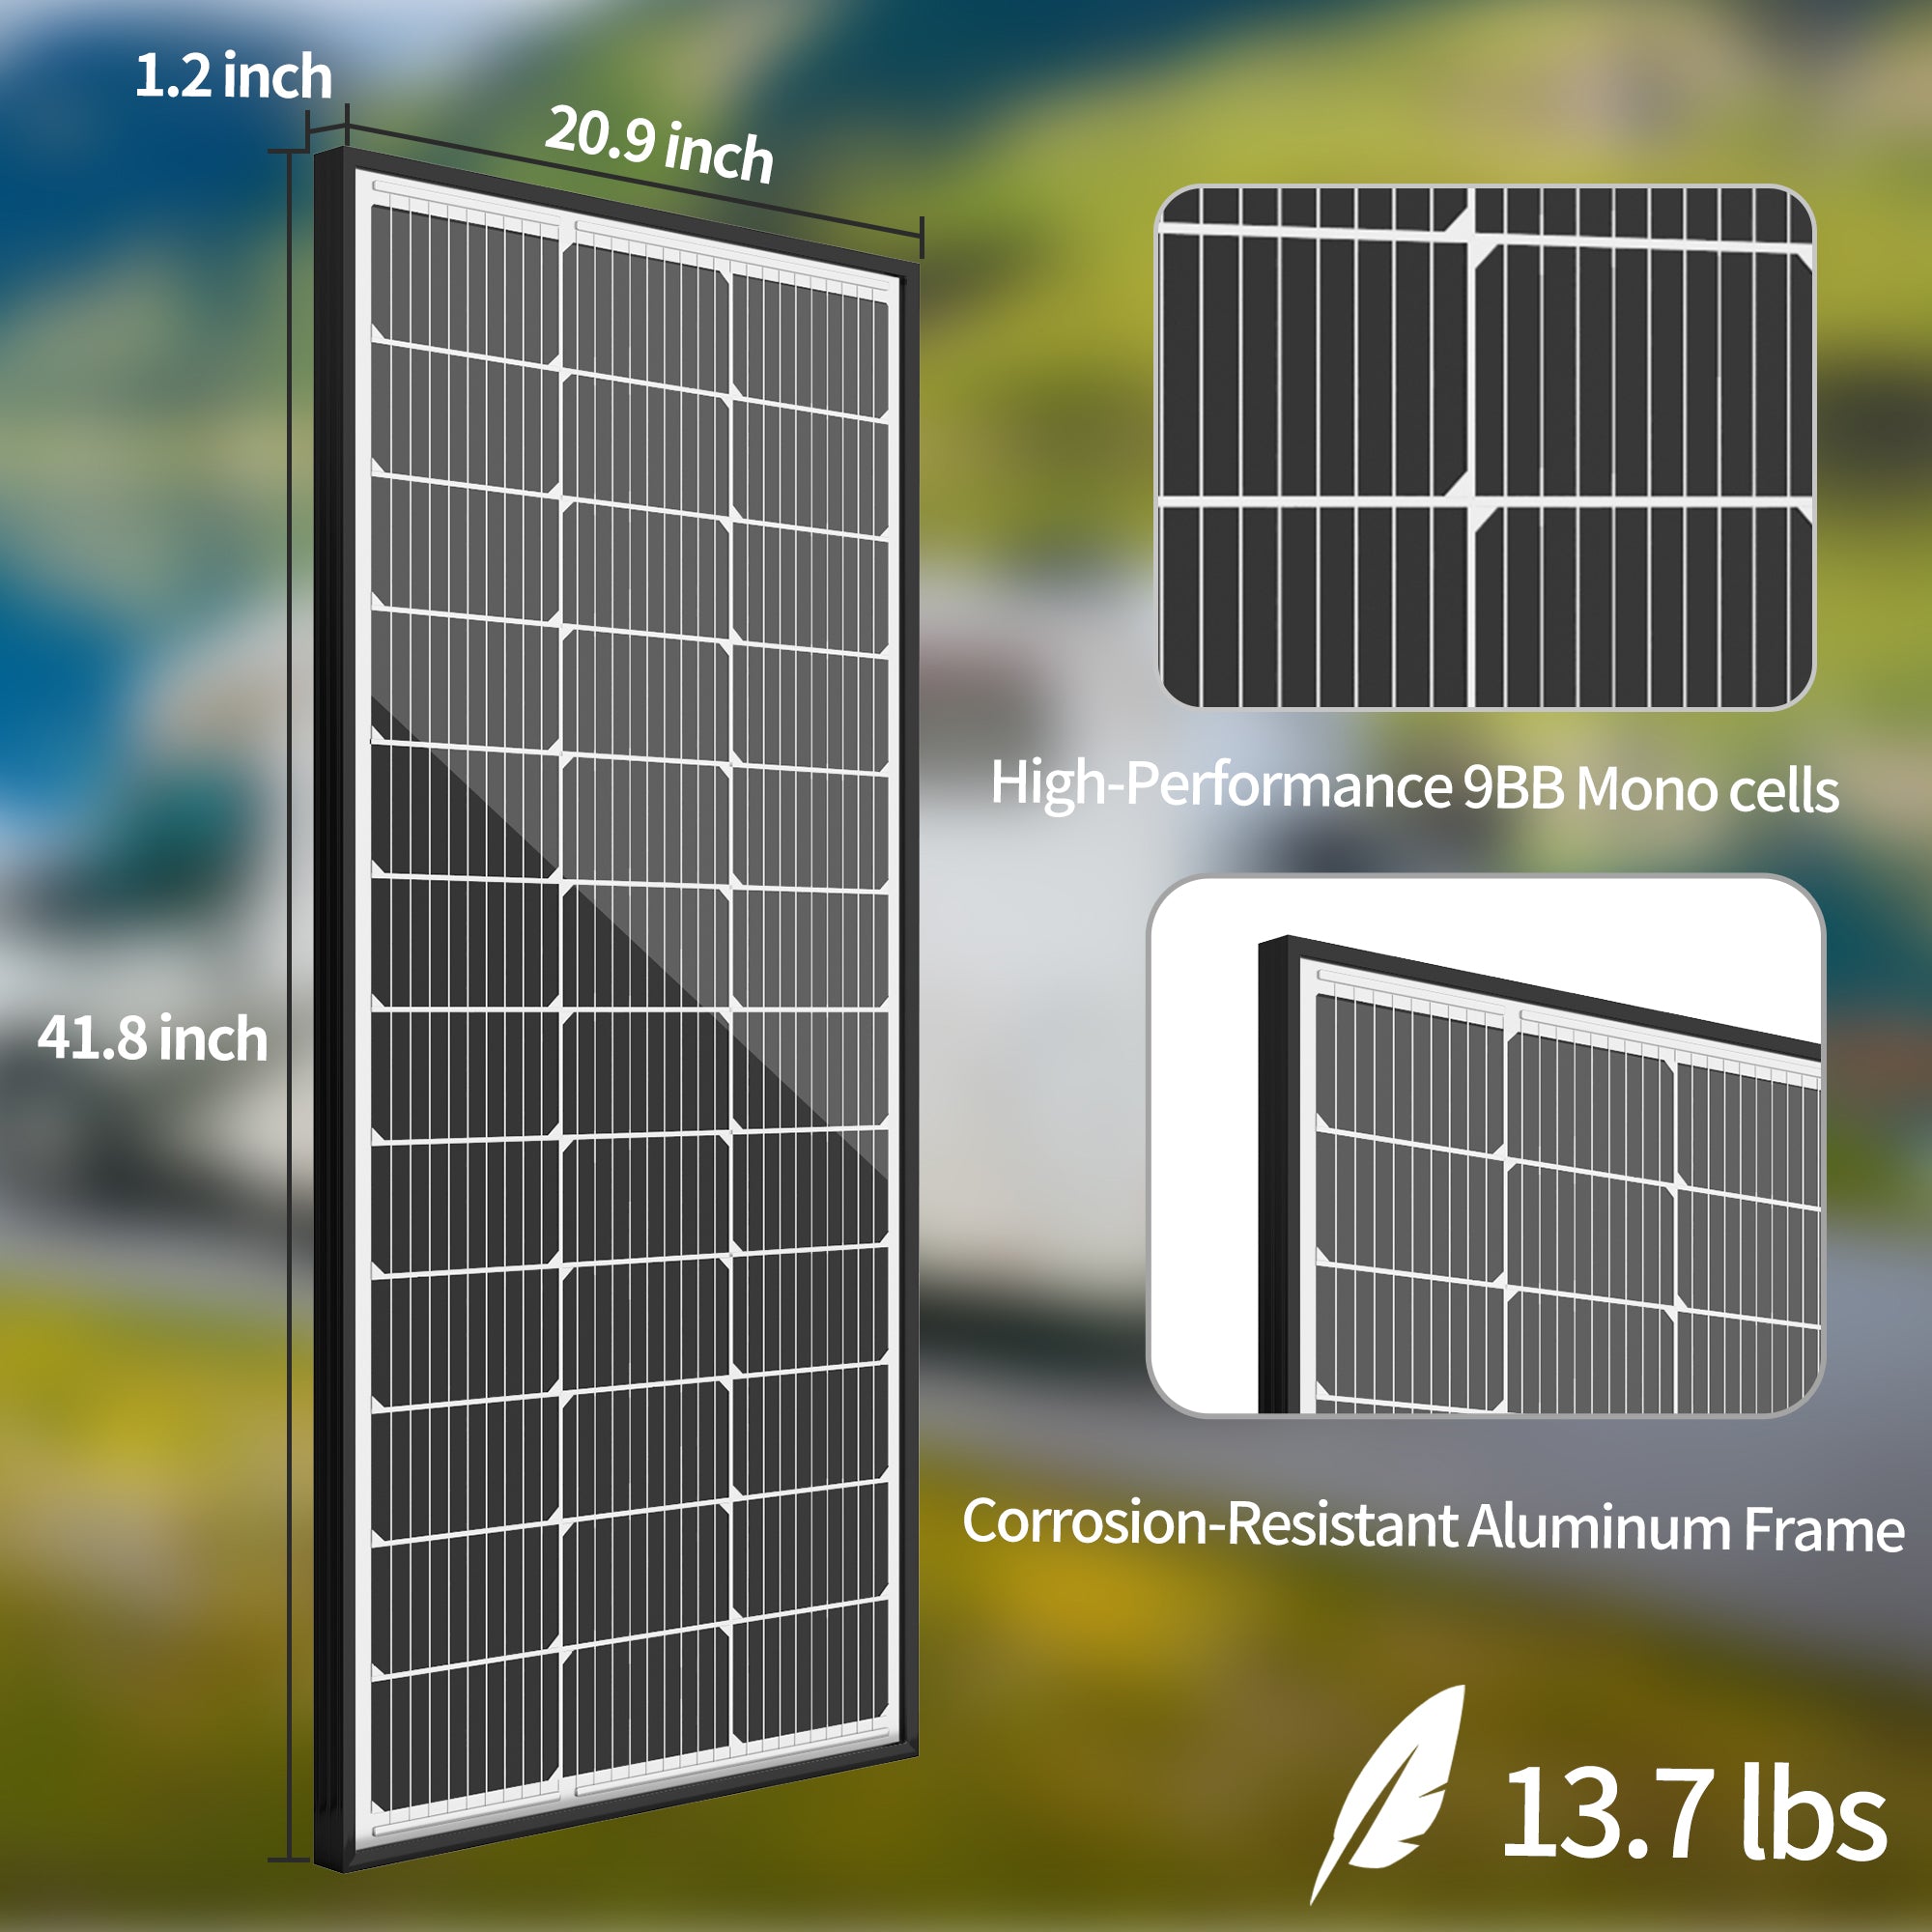 【UPGRADED】JJN 9BB Solar Panels 12V 100 Watt Solar panel